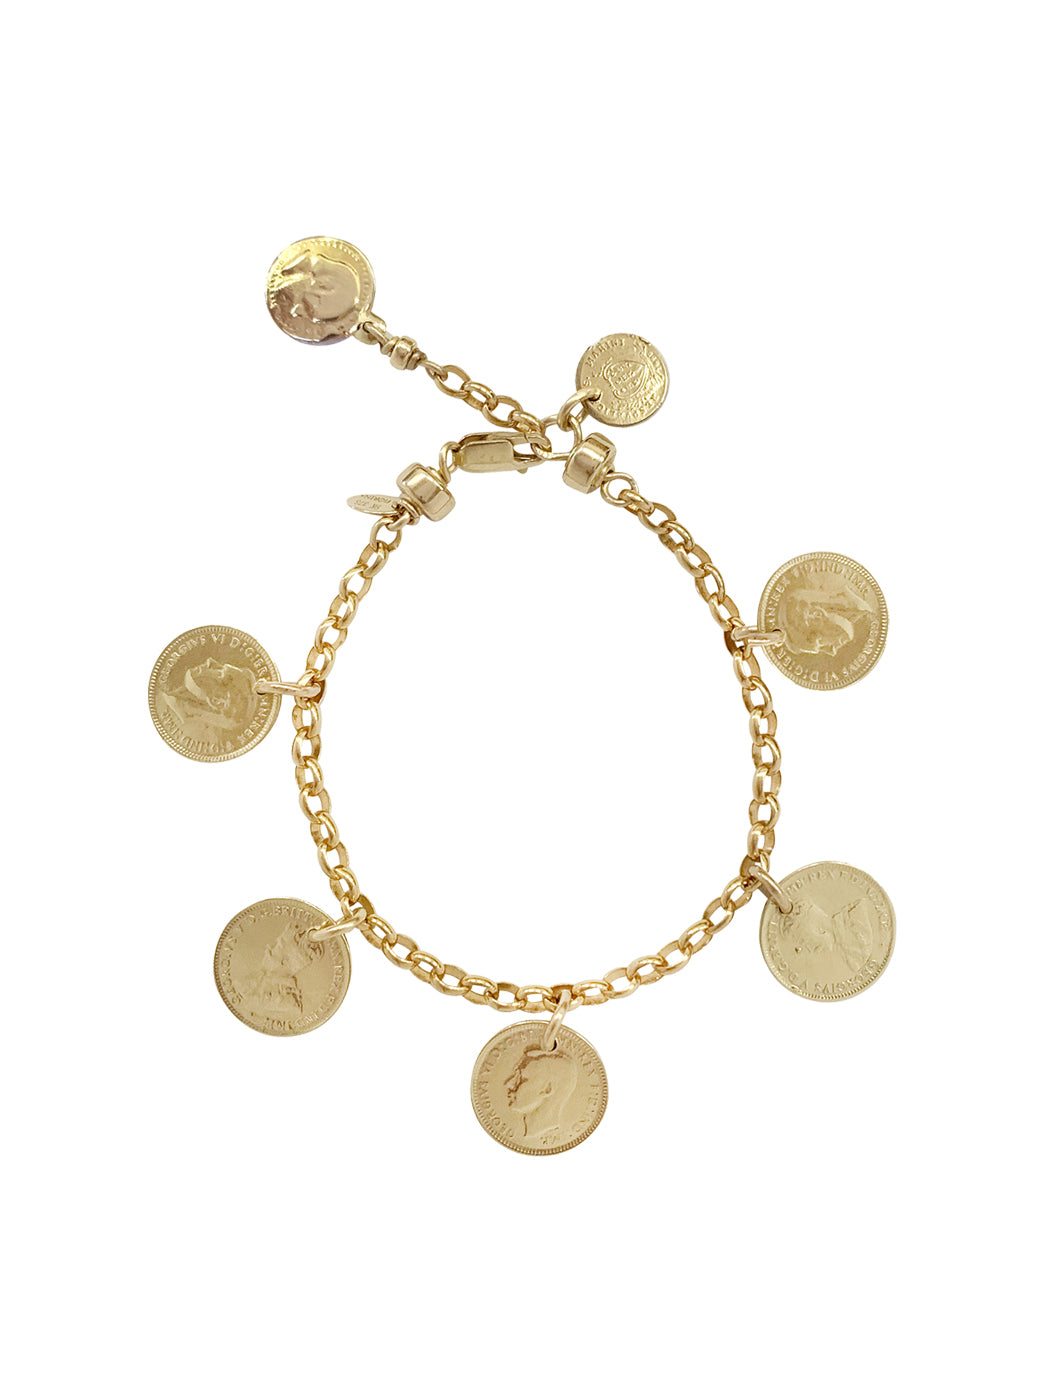 Vishesh jewels 916 Gold Bangle Bracelet 15 Grams